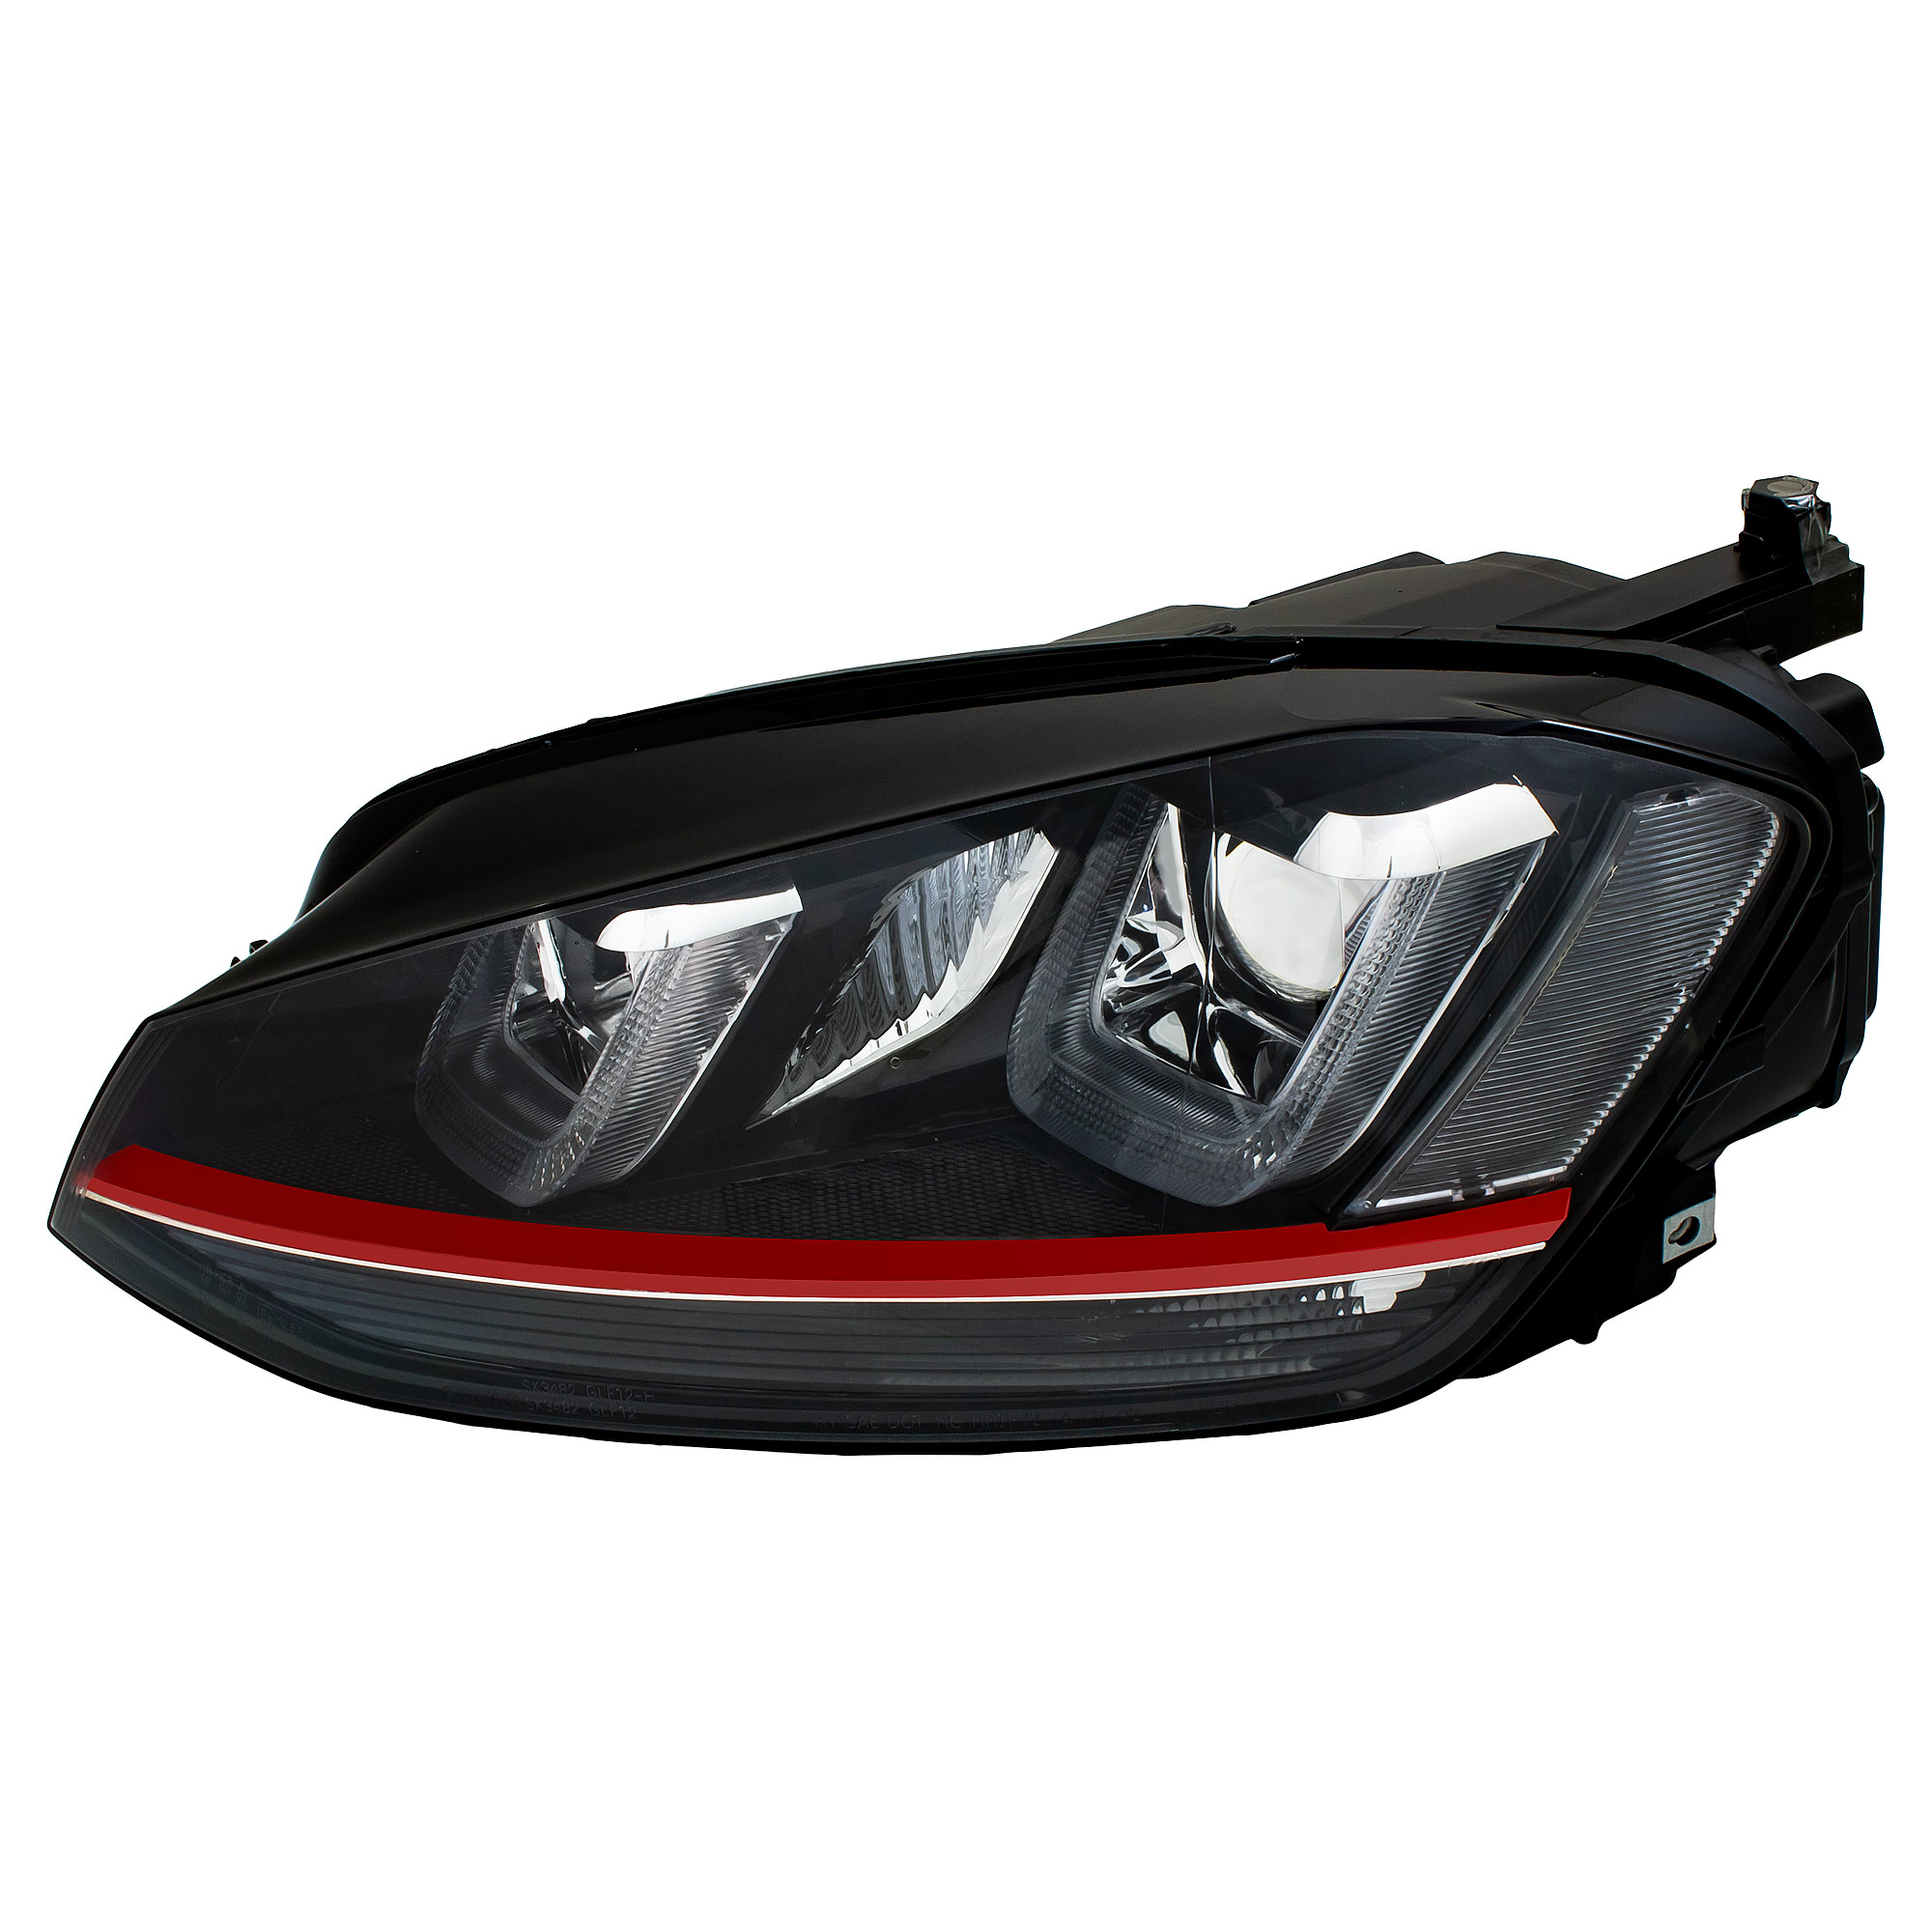 Scheinwerfer DRL LED Tagfahrlicht für VW Golf 6 Bj. 08-13 Schwarz LTI, Golf  6, Golf, VW, Scheinwerfer